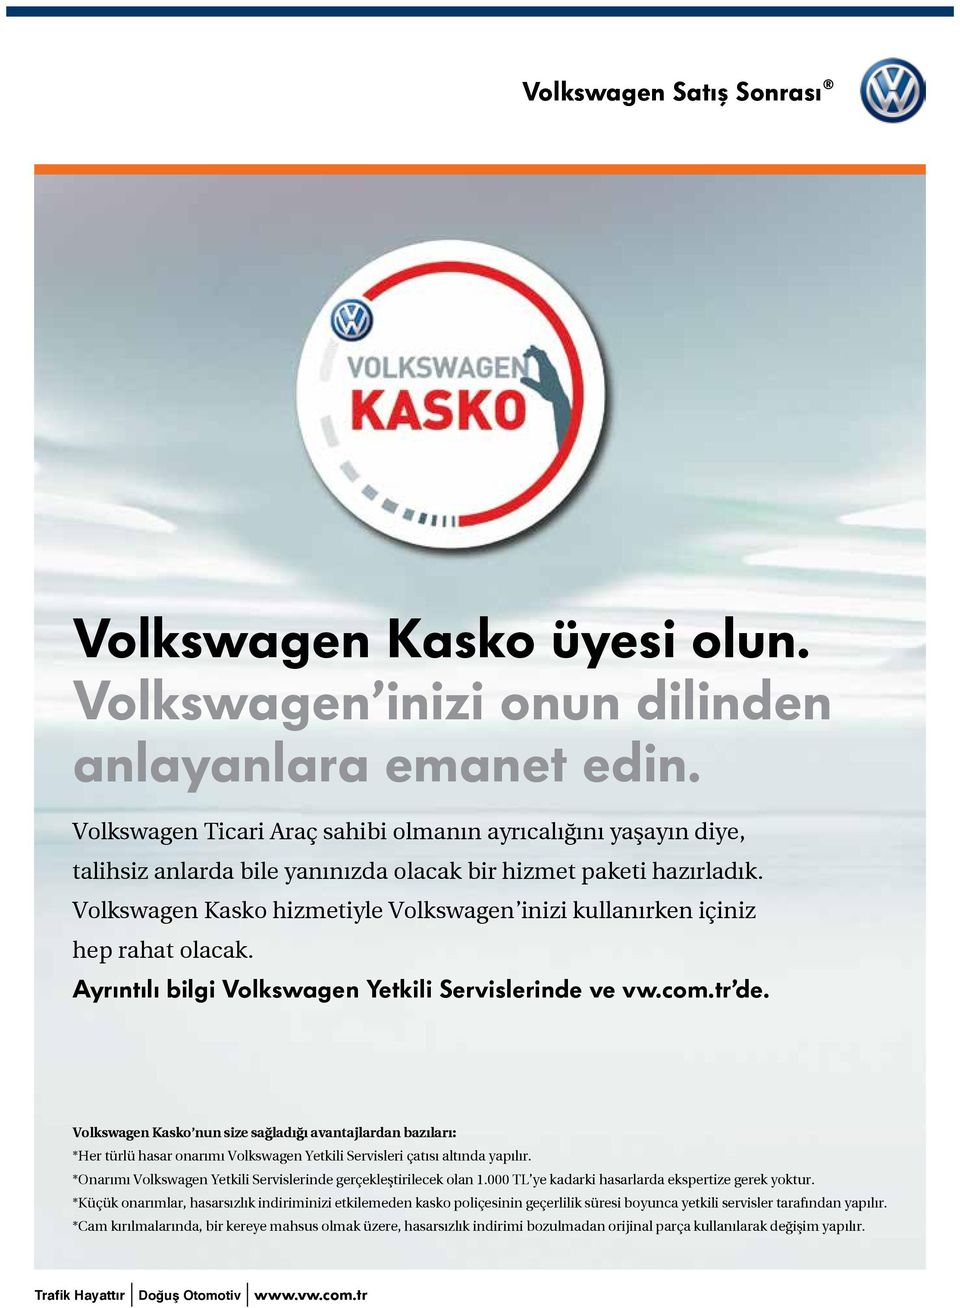 Volkswagen Kasko hizmetiyle Volkswagen inizi kullanırken içiniz hep rahat olacak. Ayrıntılı bilgi Volkswagen Yetkili Servislerinde ve vw.com.tr de.